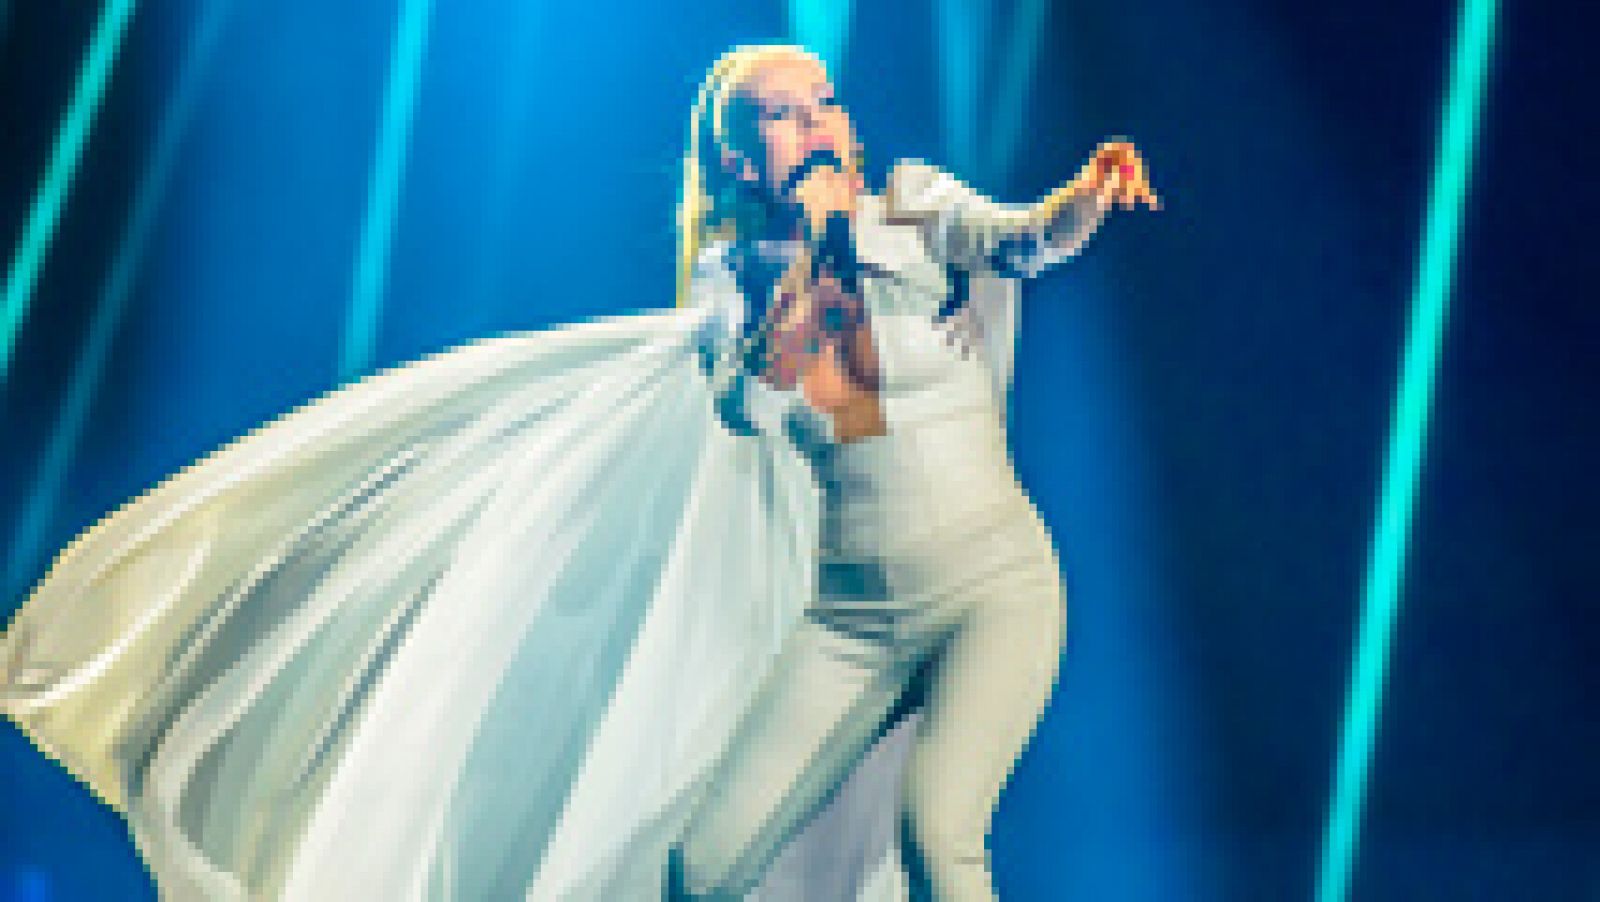 Eurovisión 2017 - Islandia: Svala canta "Paper"